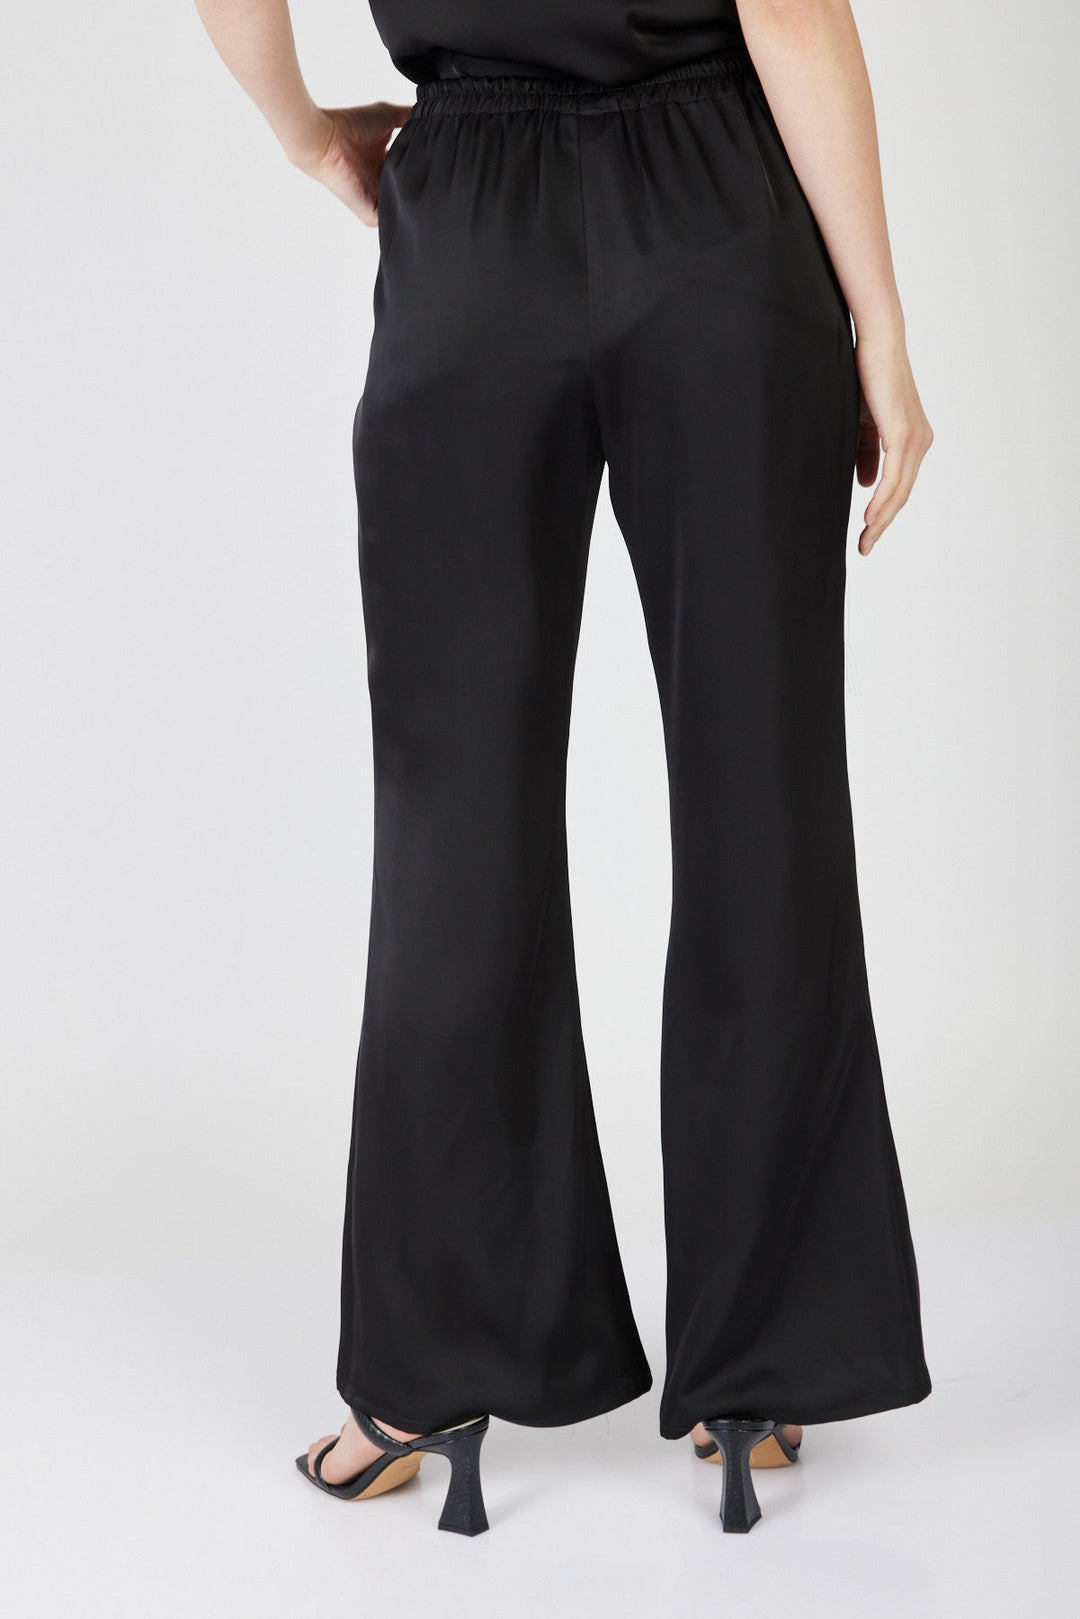 מכנסיים רחבים האנטר בצבע שחור - Razili X Noritamy